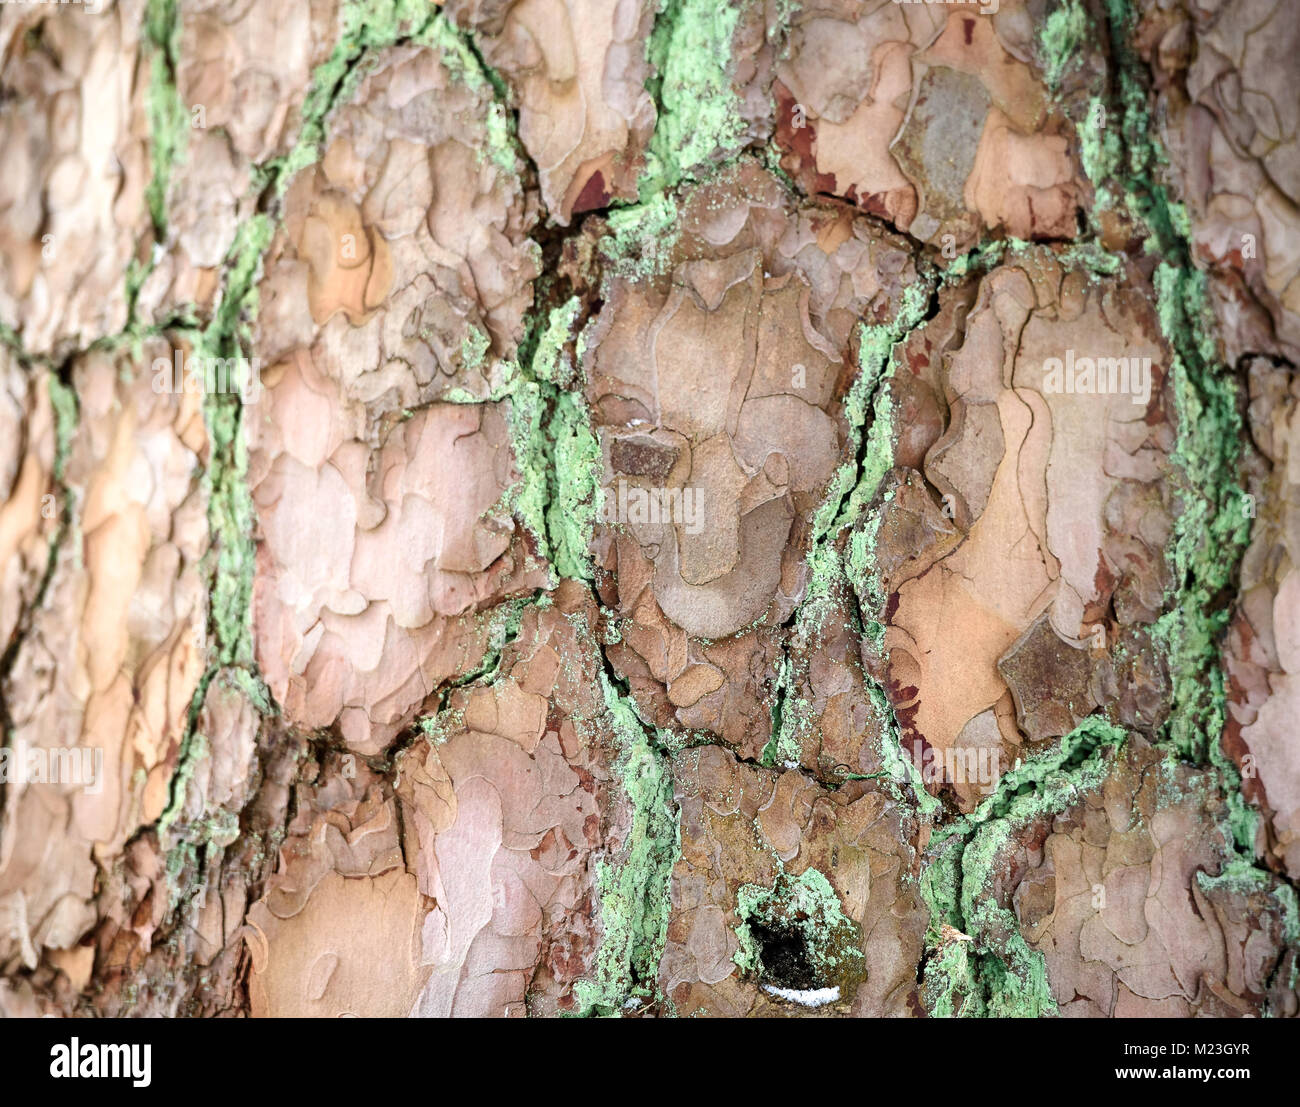 La texture della corteccia. Immagine di sfondo. Naturale. Foto Stock